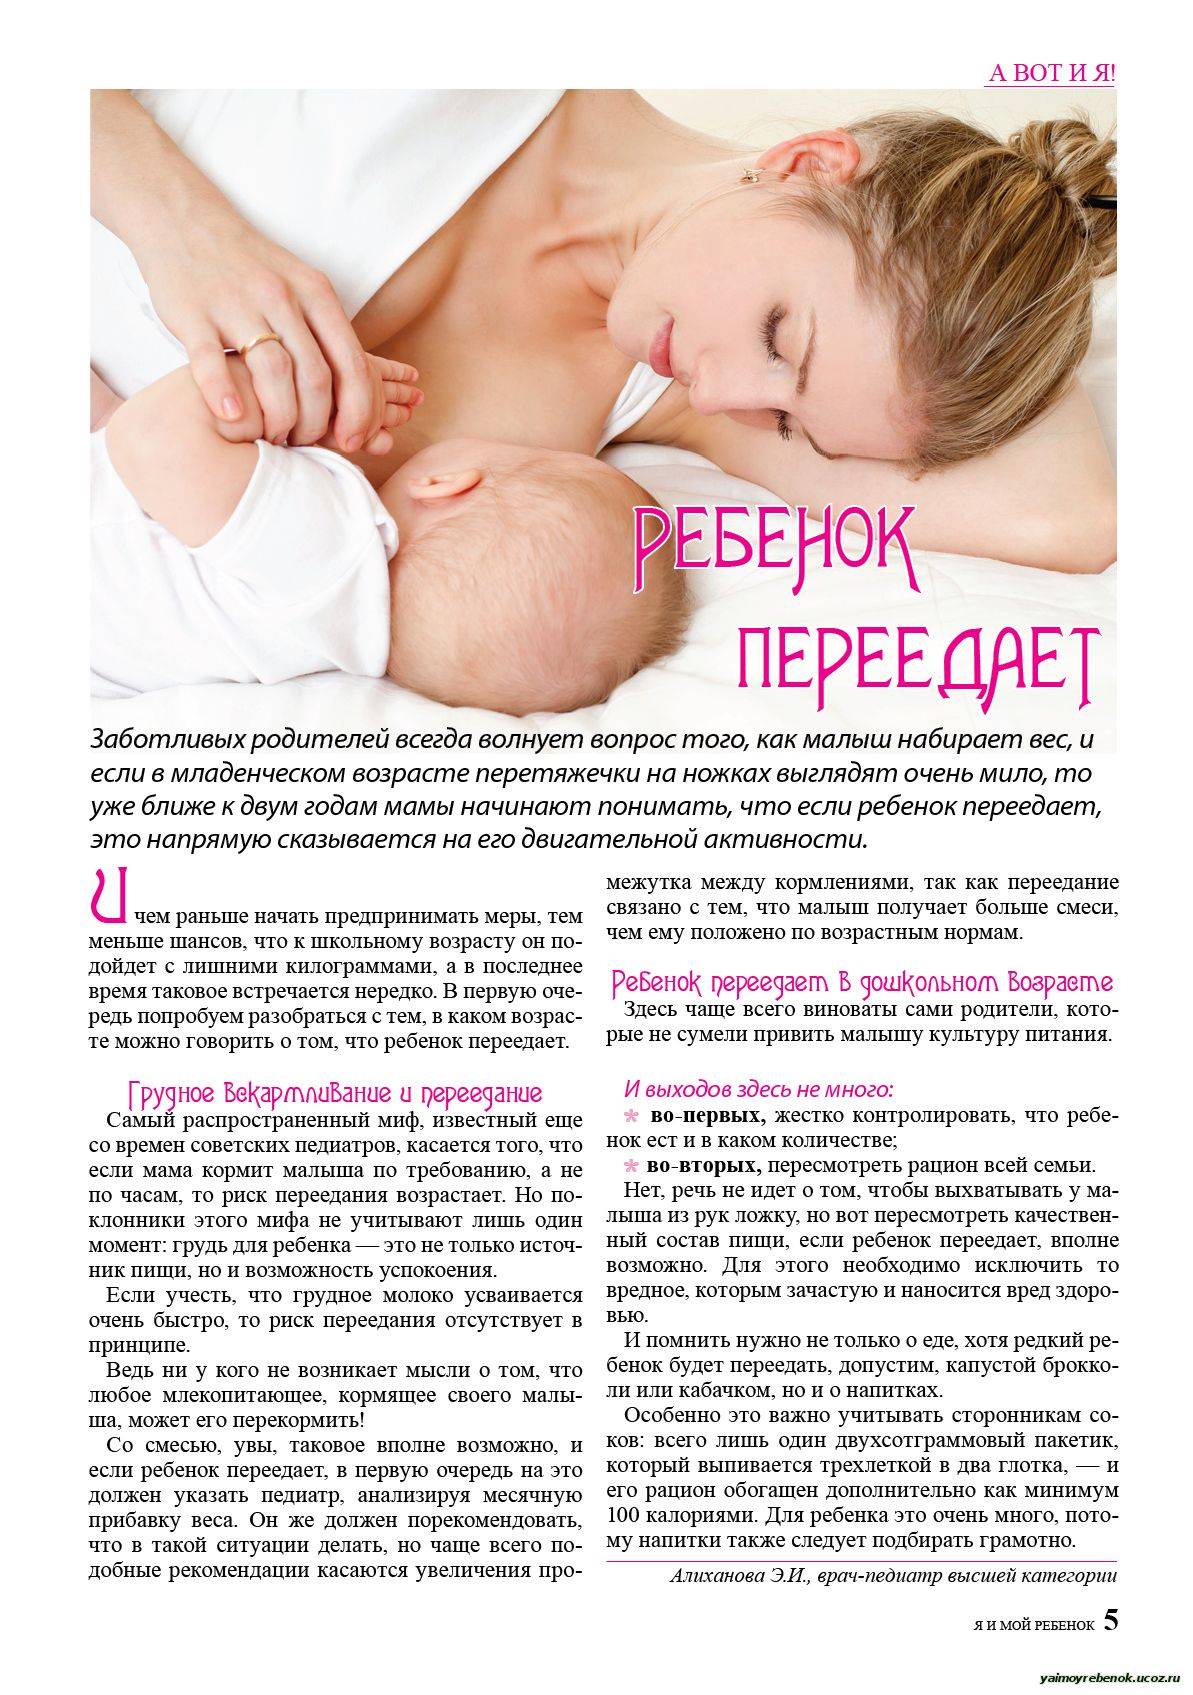 Восстановление после родов - реабилитация организма у женщин после беременности